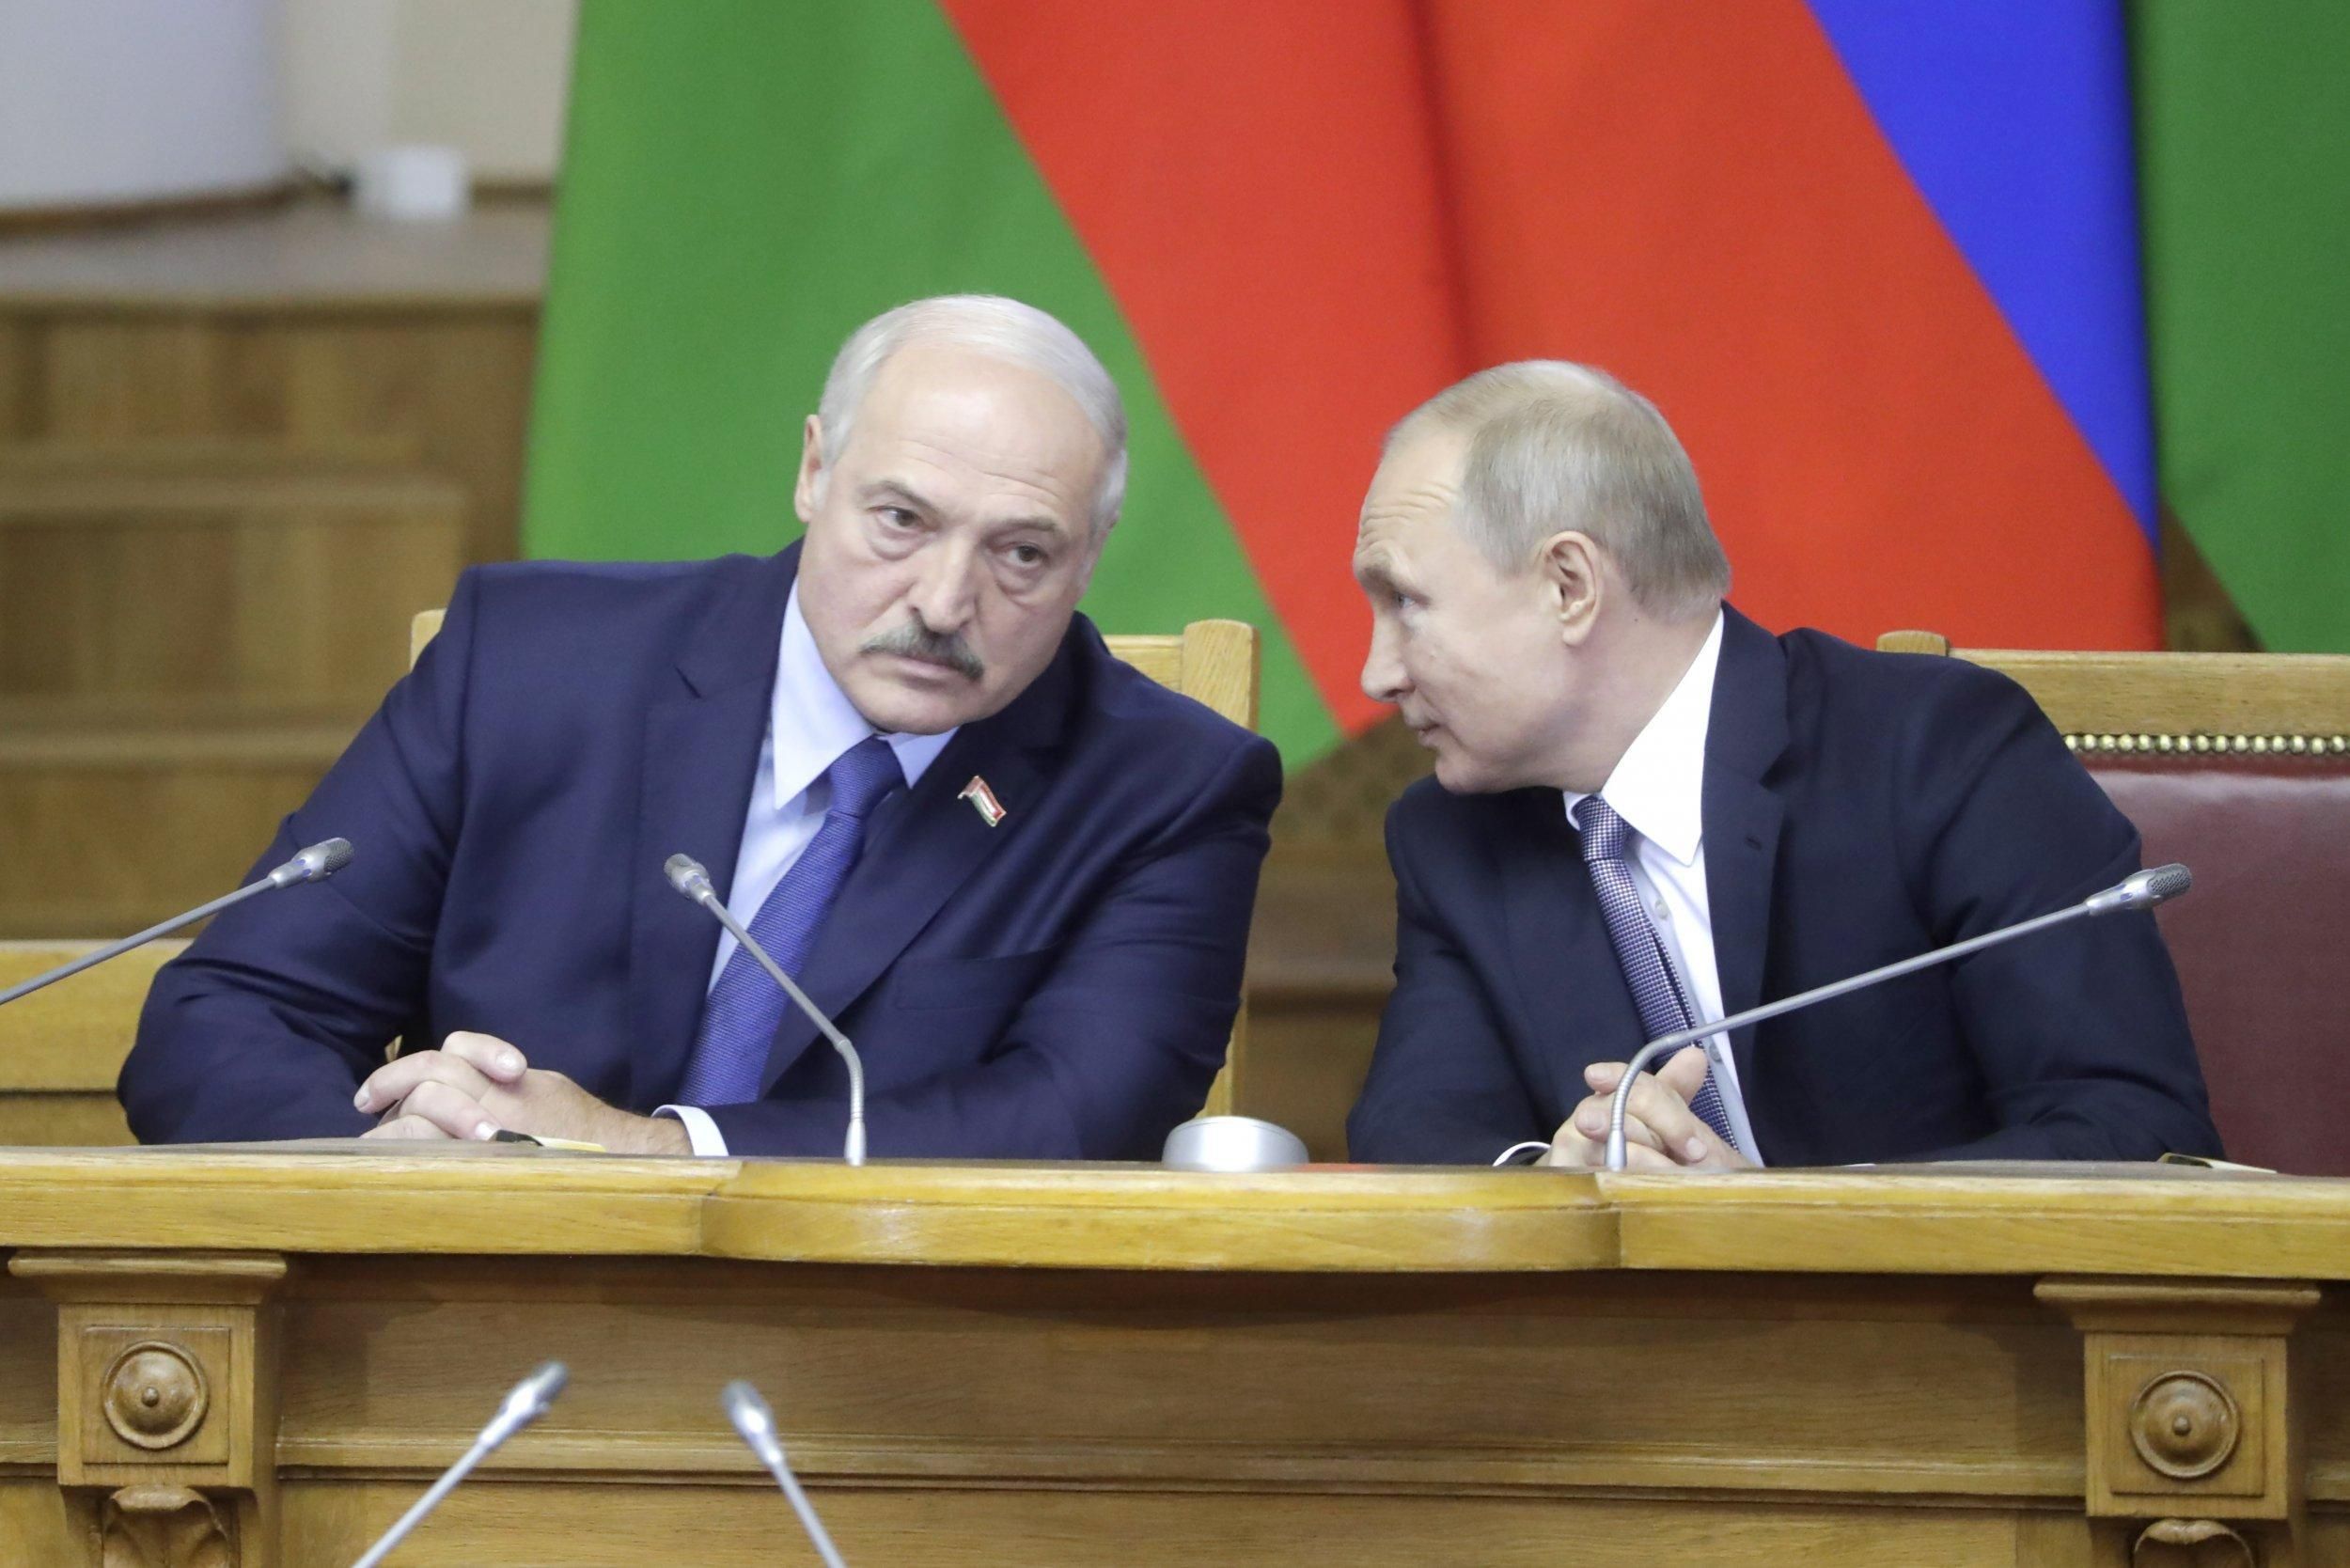 "Я – весь ваш": что означает новый союз Лукашенко и Путина и как это повлияет на Украину